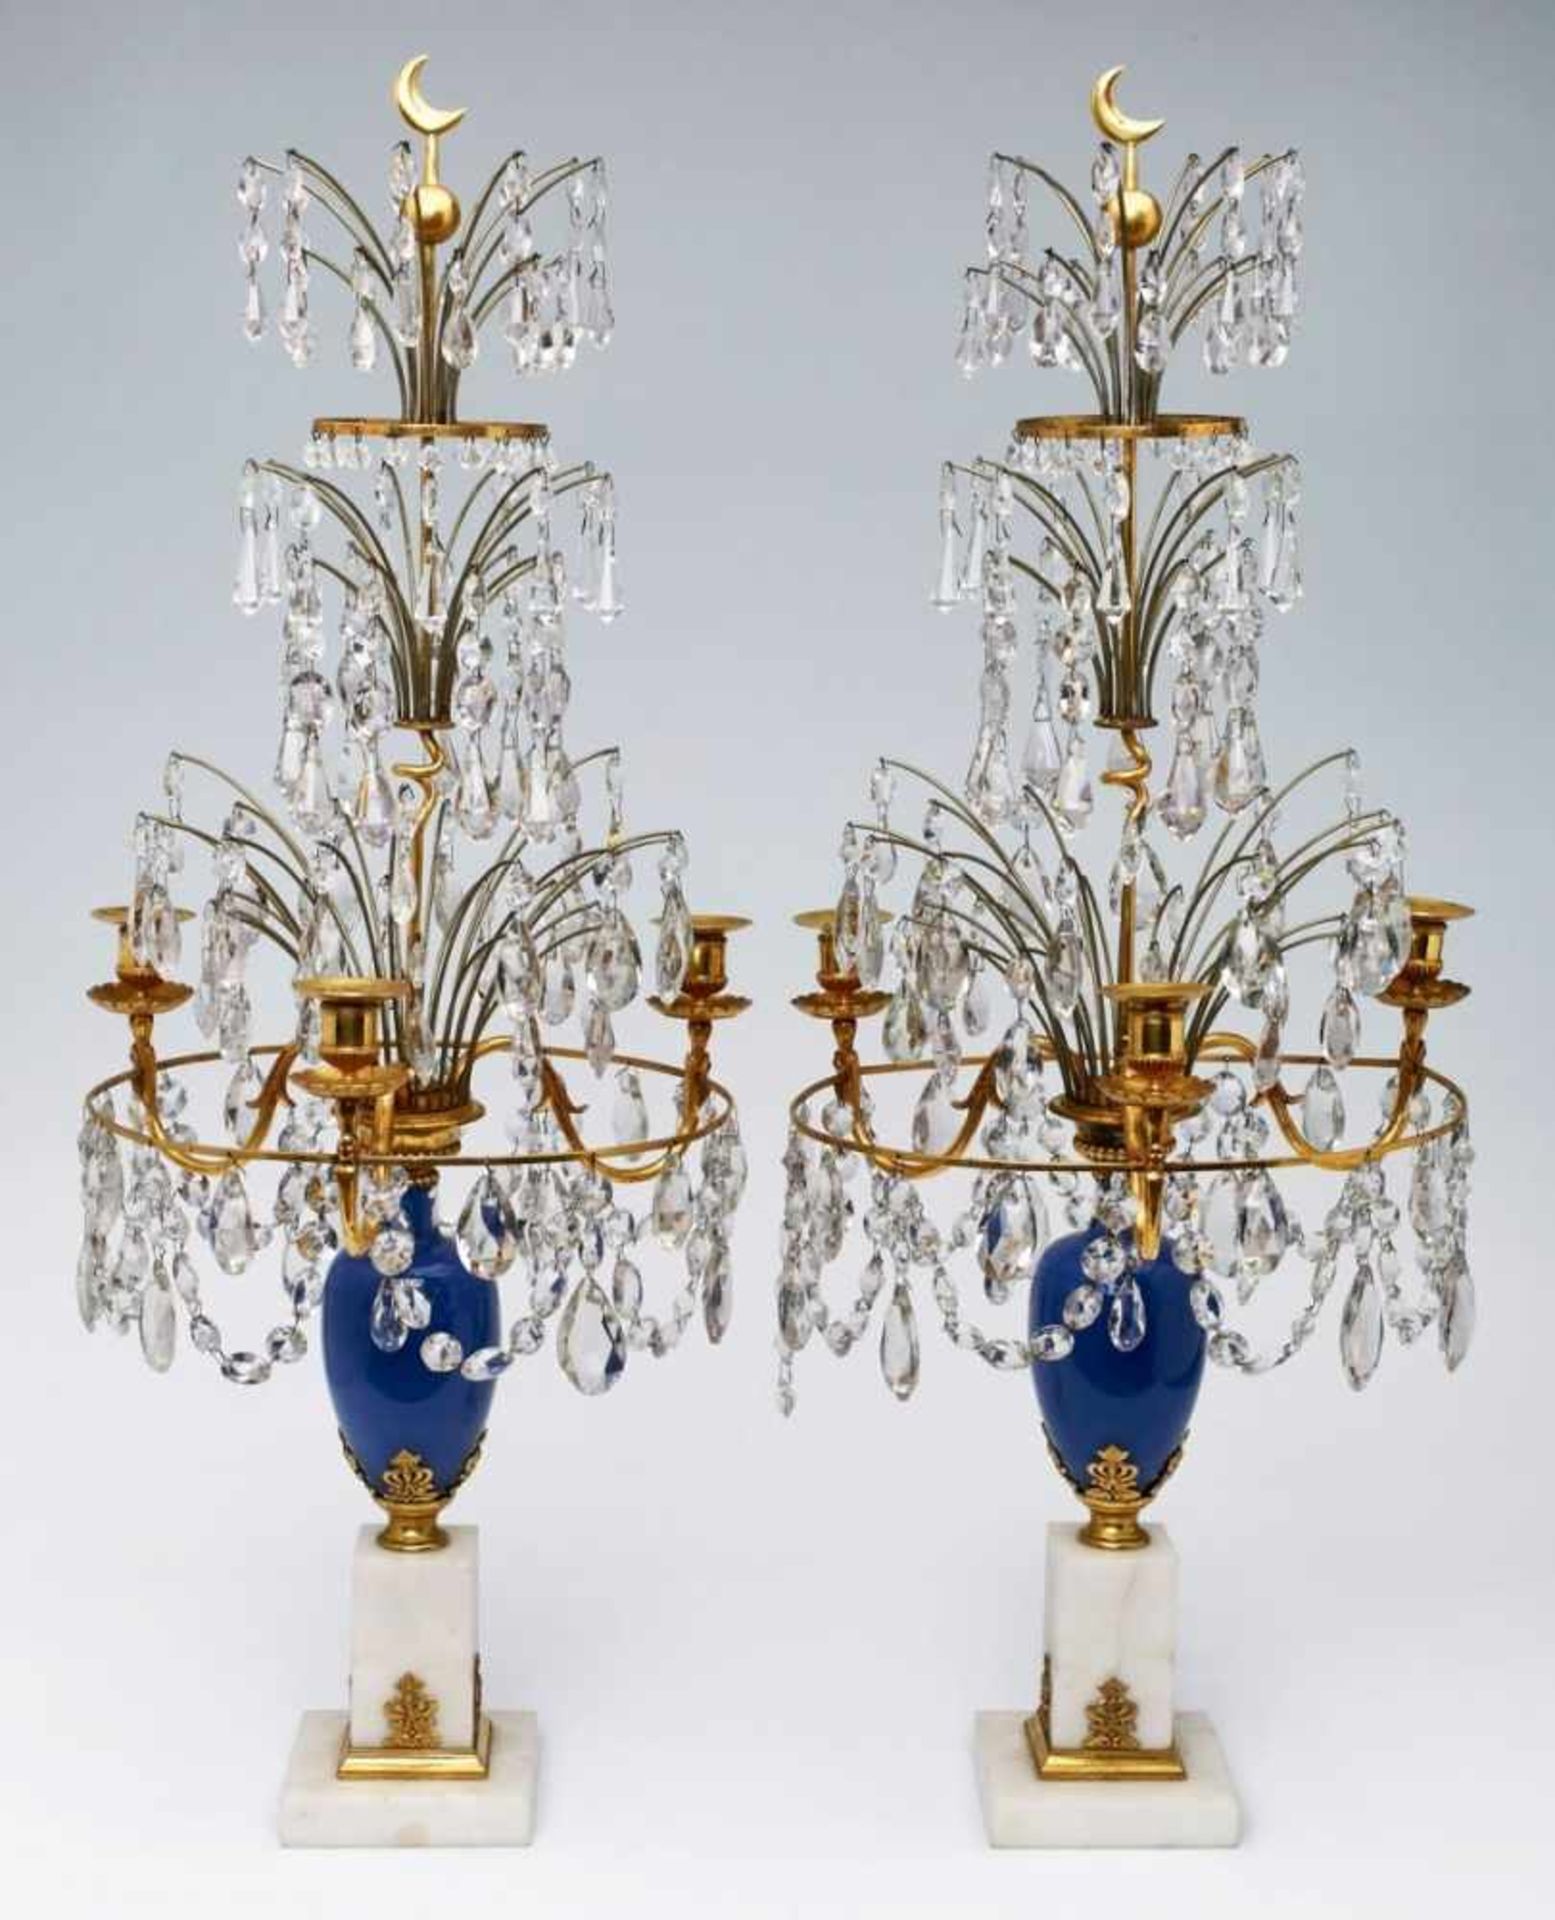 Paar Girandolen wohl Schweden um 1820.Vergoldetes Messinggestänge mit blauem Glasbalusterschaft,